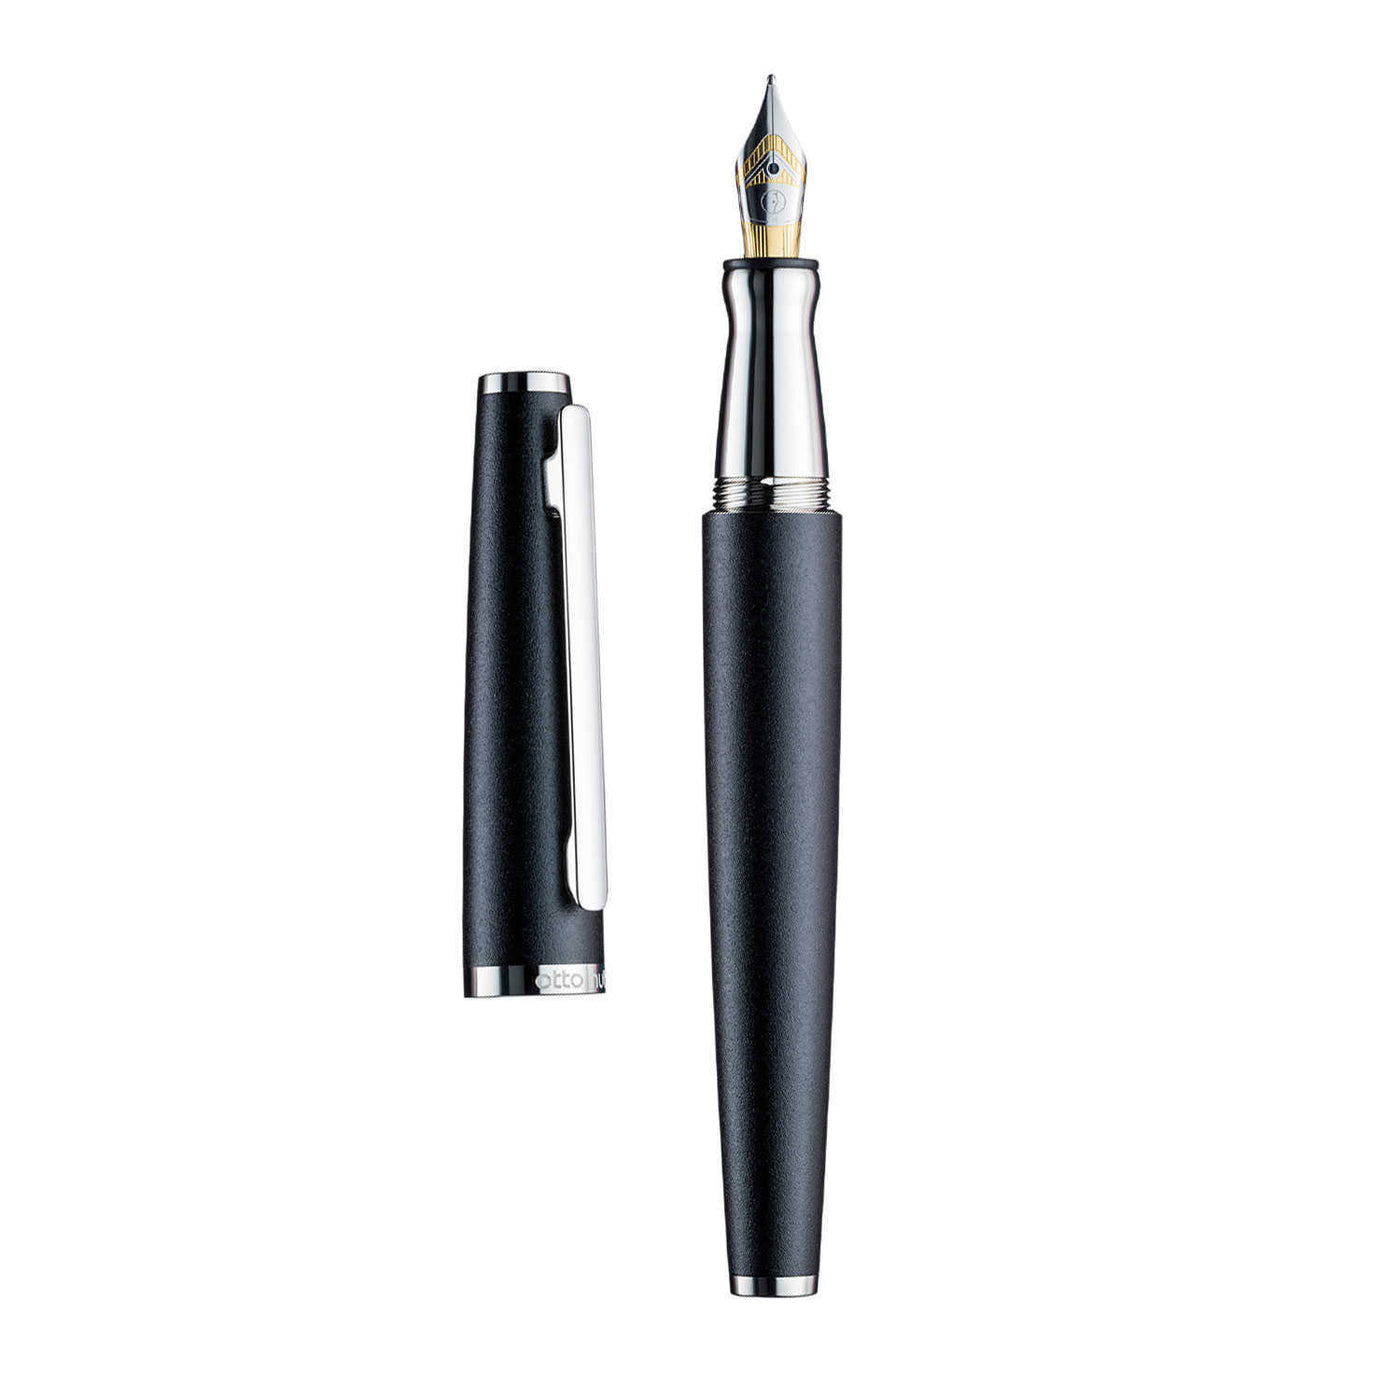 Otto Hutt Design 06 Fountain Pen Black Bicolour Steel Nib 2